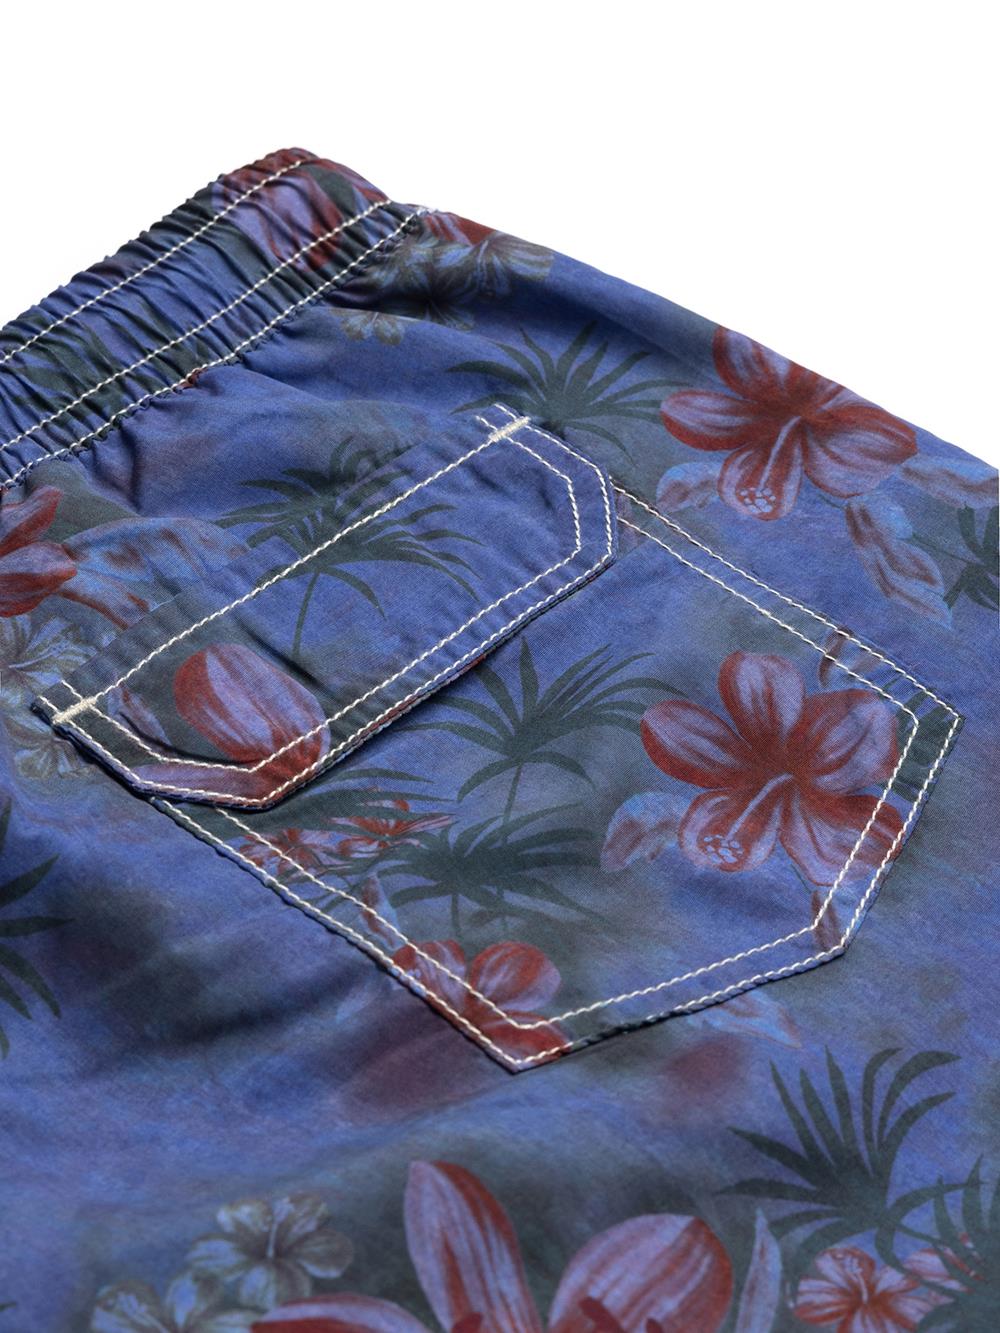 Belize blue floral swimwear